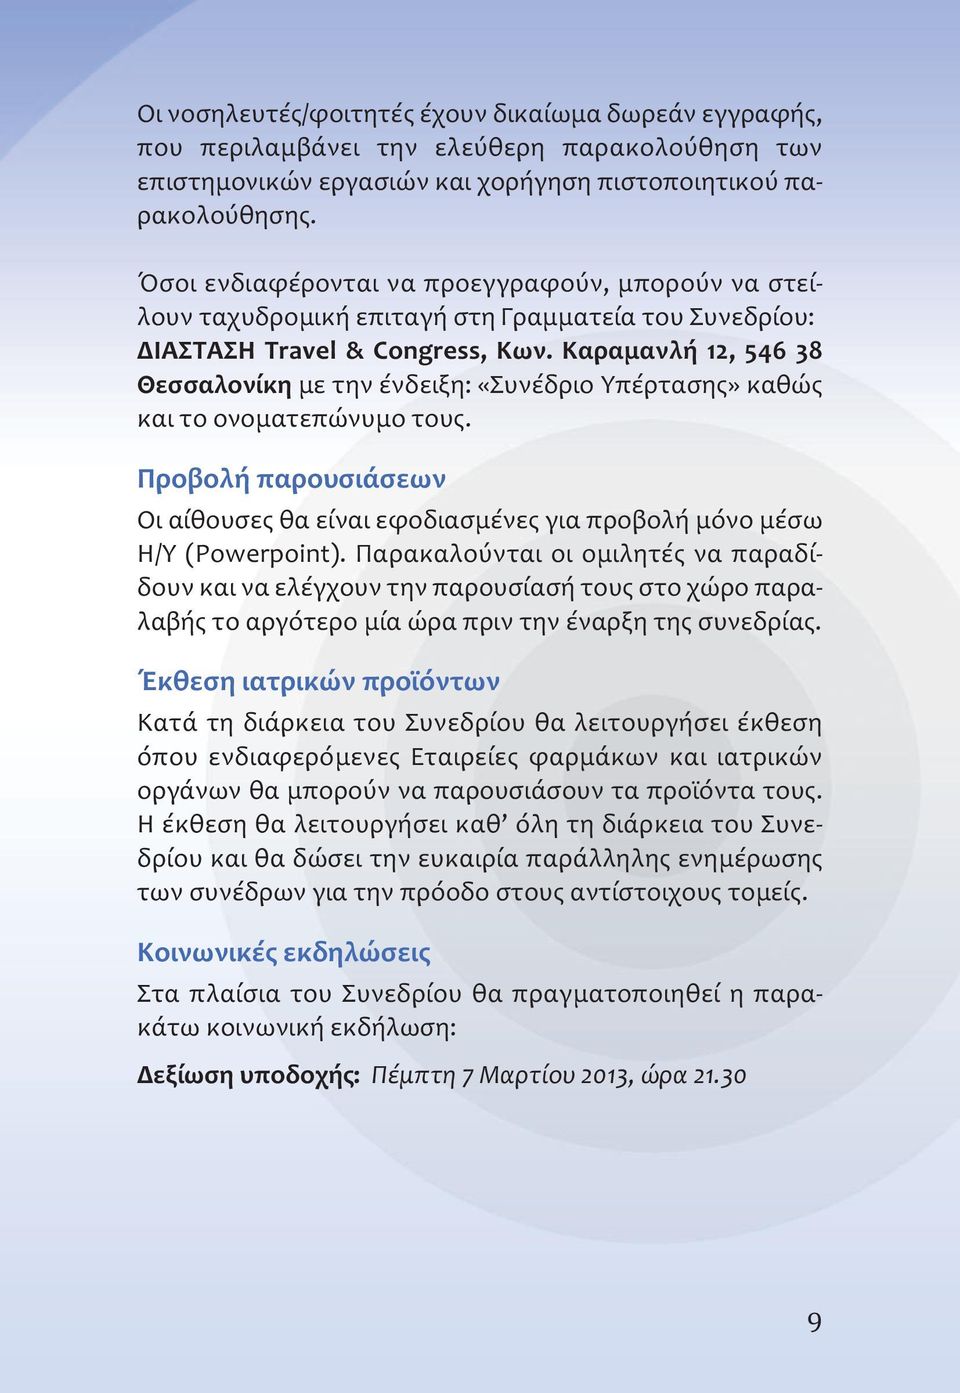 Καραμανλή 12, 546 38 Θεσσαλονίκη με την ένδειξη: «Συνέδριο Υπέρτασης» καθώς και το ονοματεπώνυμο τους. Προβολή παρουσιάσεων Οι αίθουσες θα είναι εφοδιασμένες για προβολή μόνο μέσω H/Y (Powerpoint).